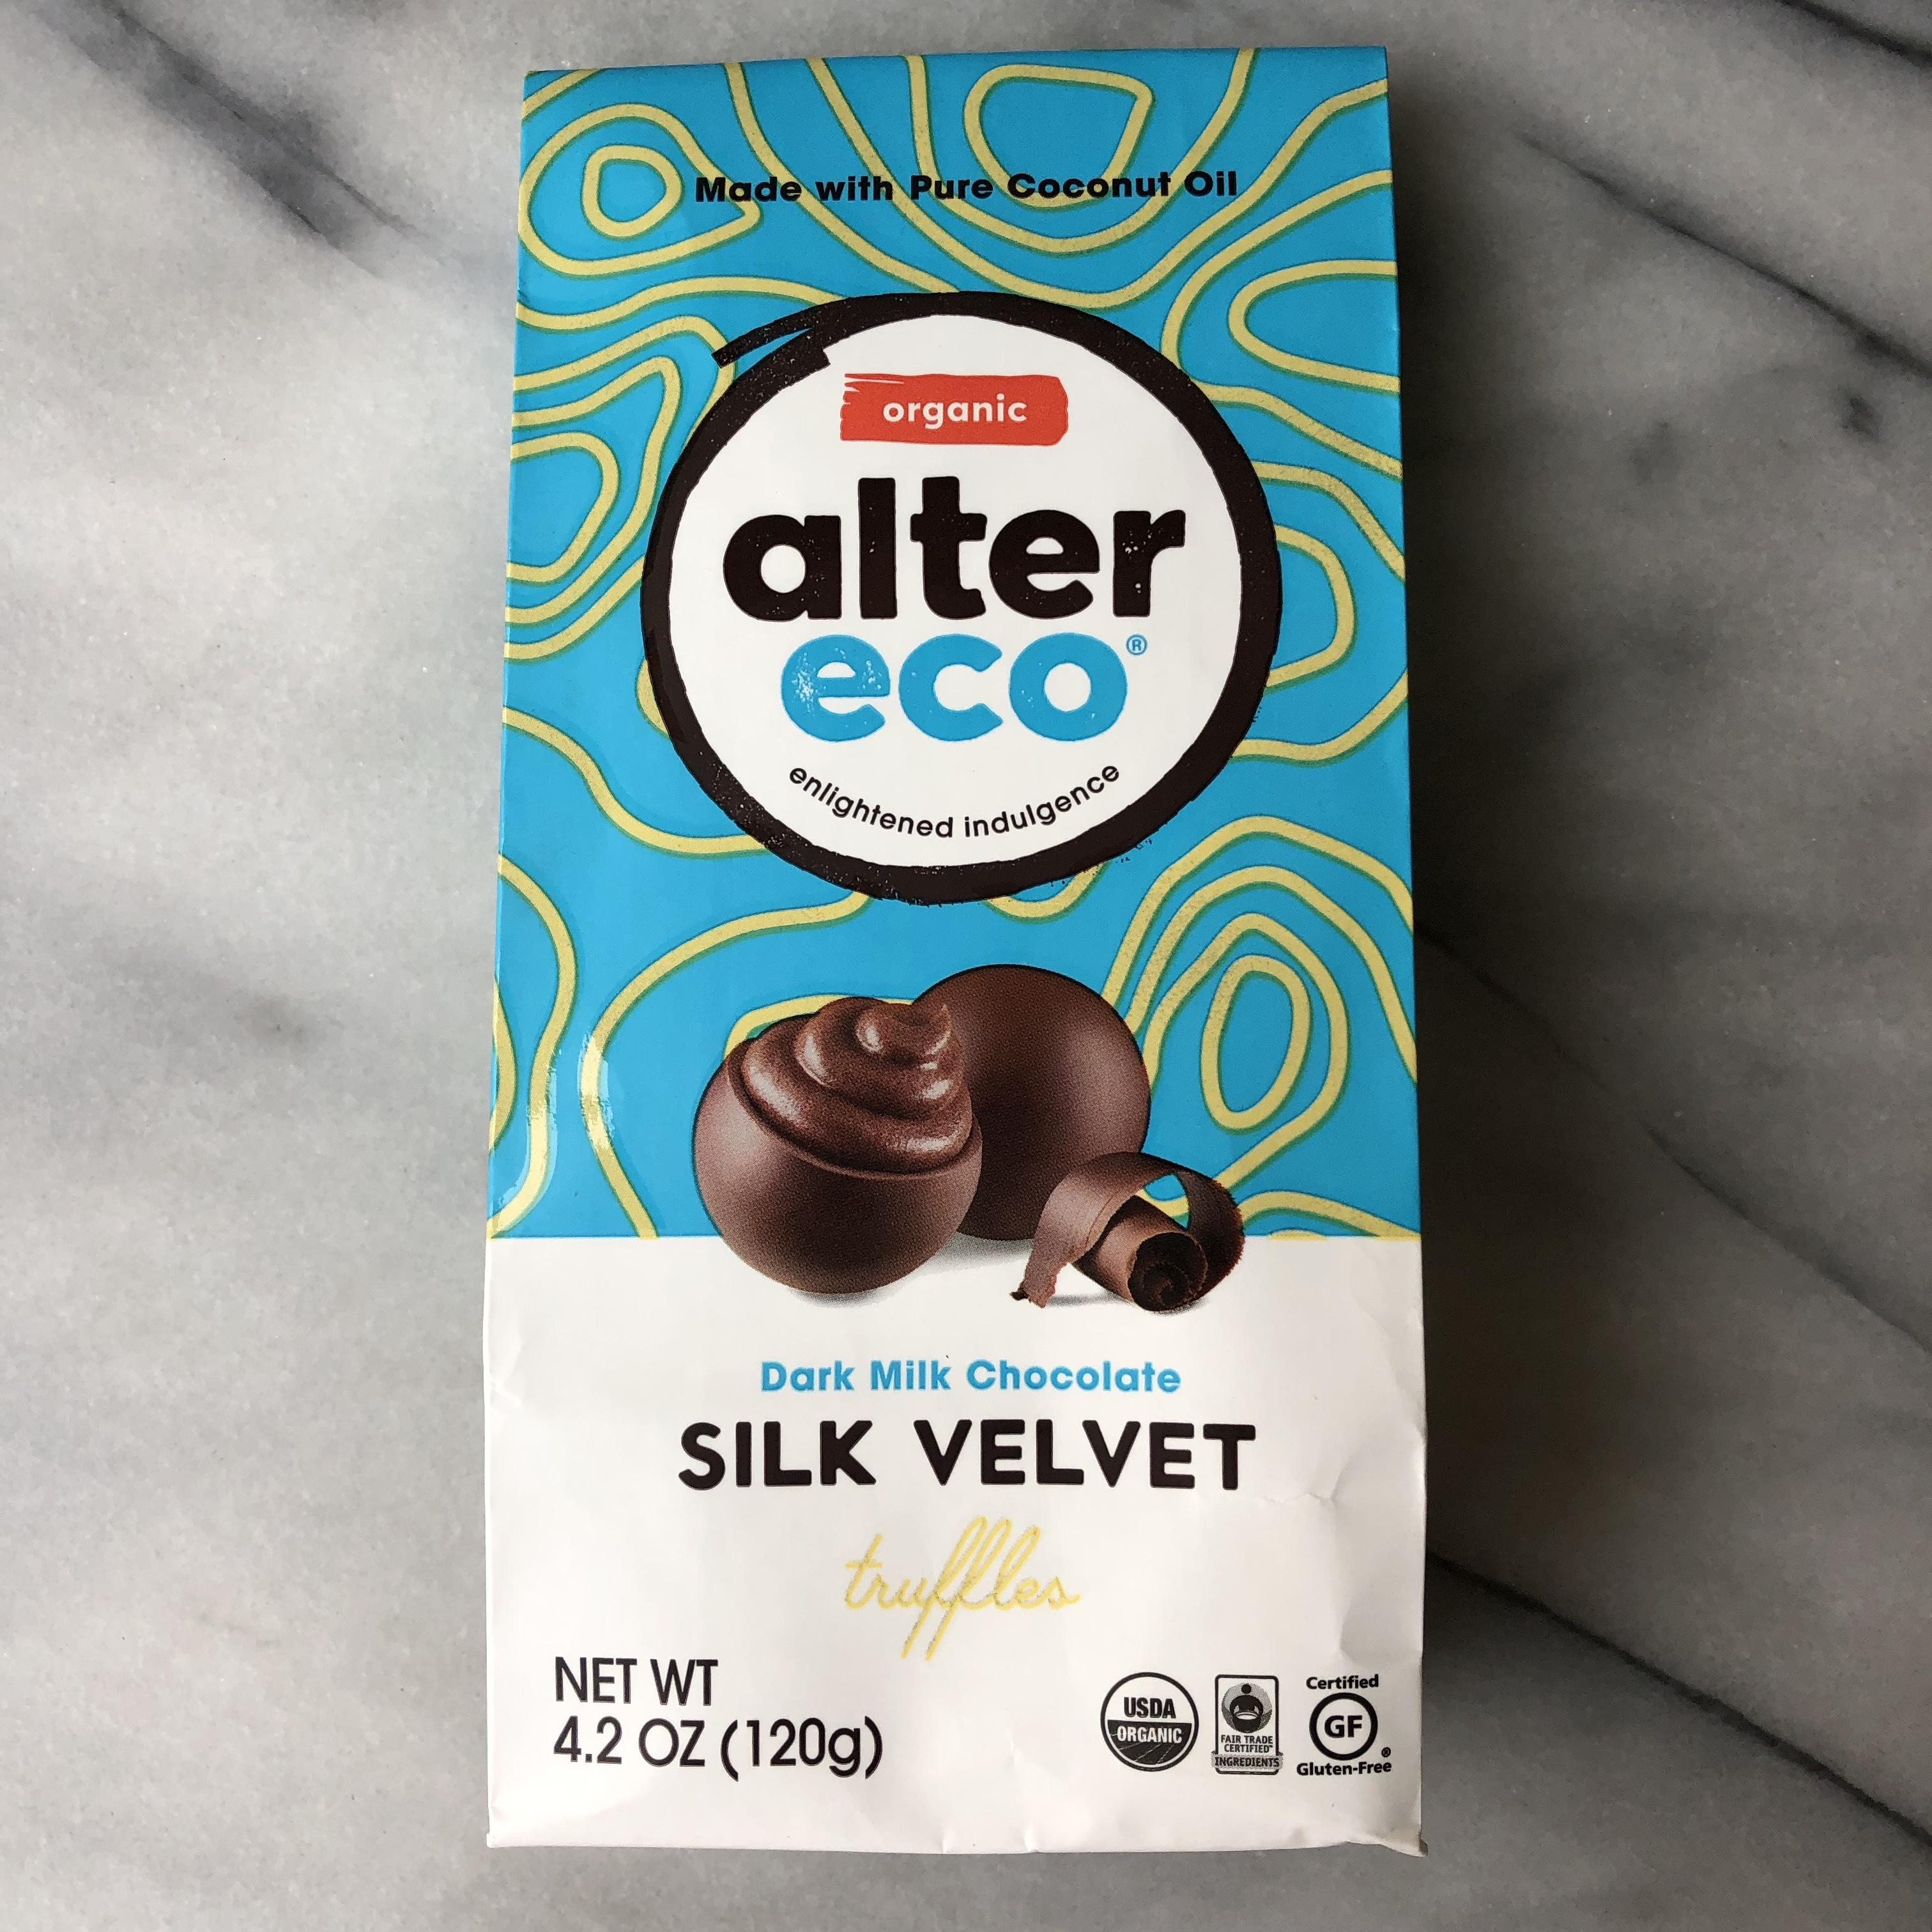 Alter Eco Foods - Gluten-Free Finder